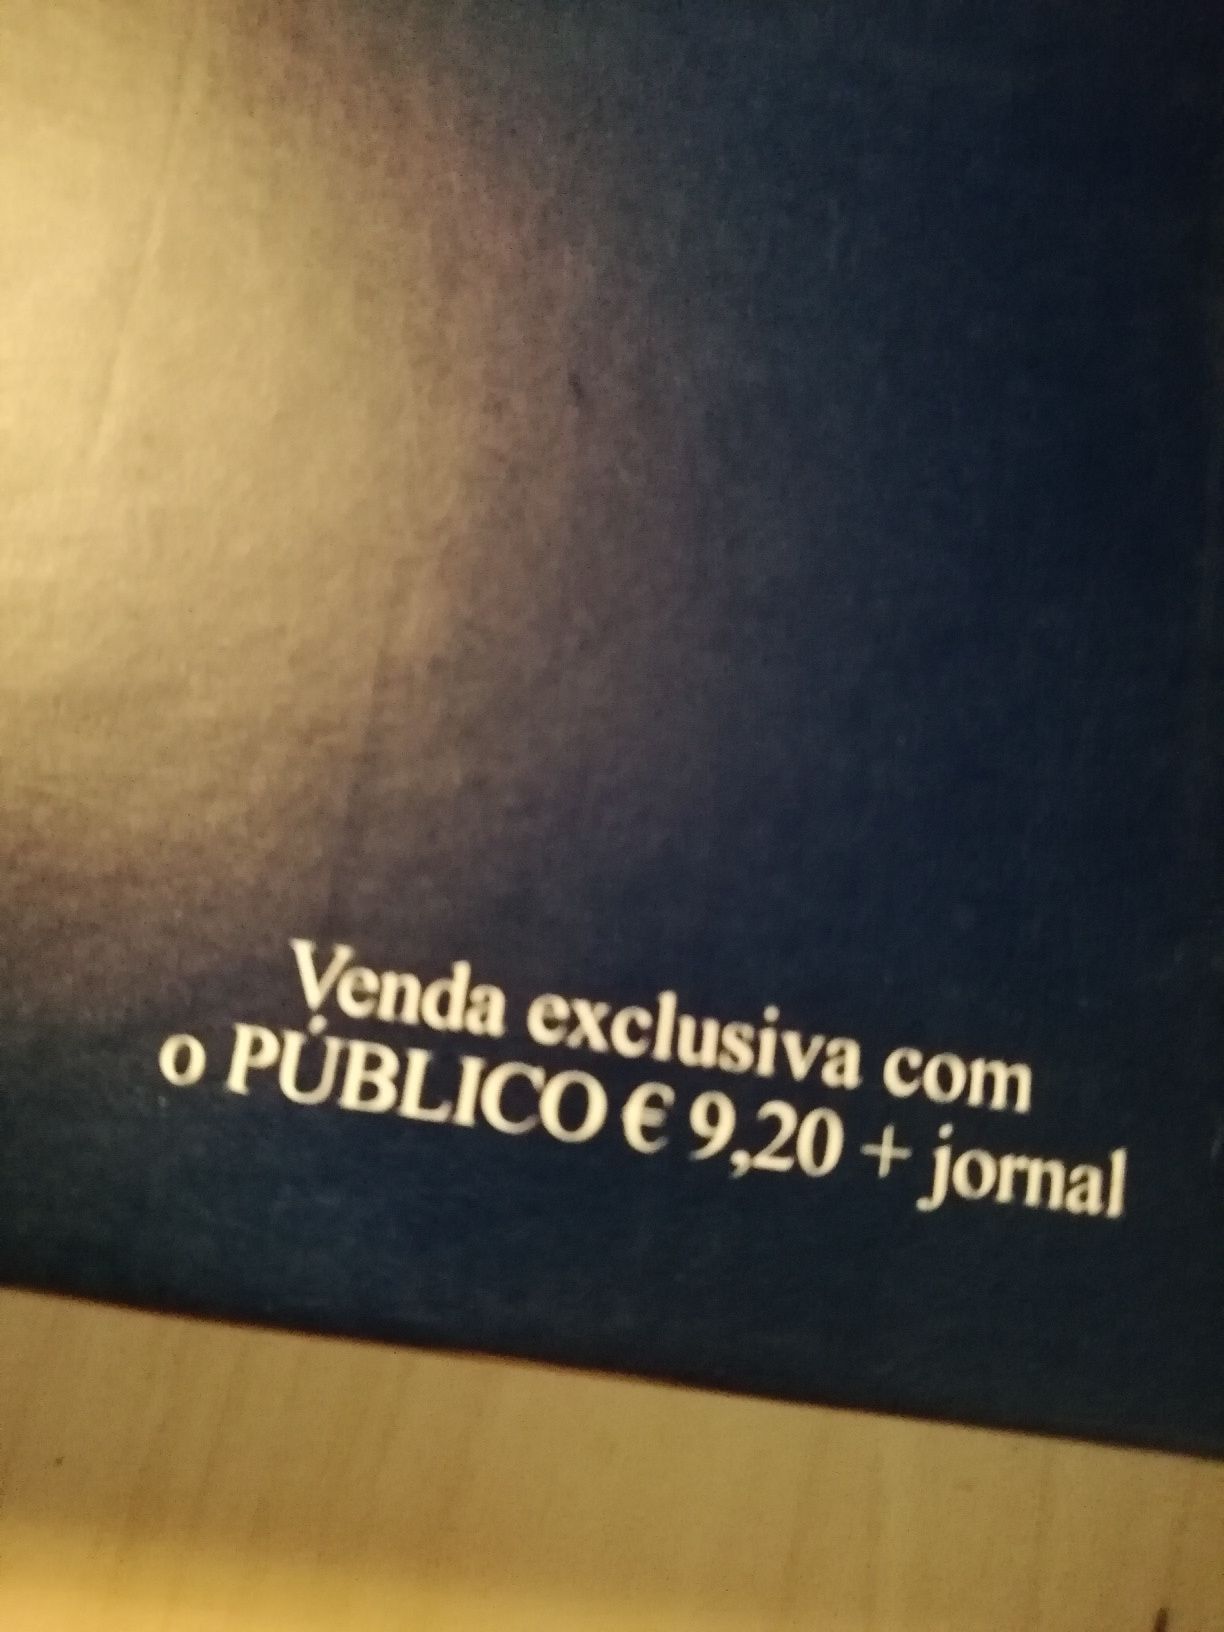 Enciclopédia completa Verbo / Publico